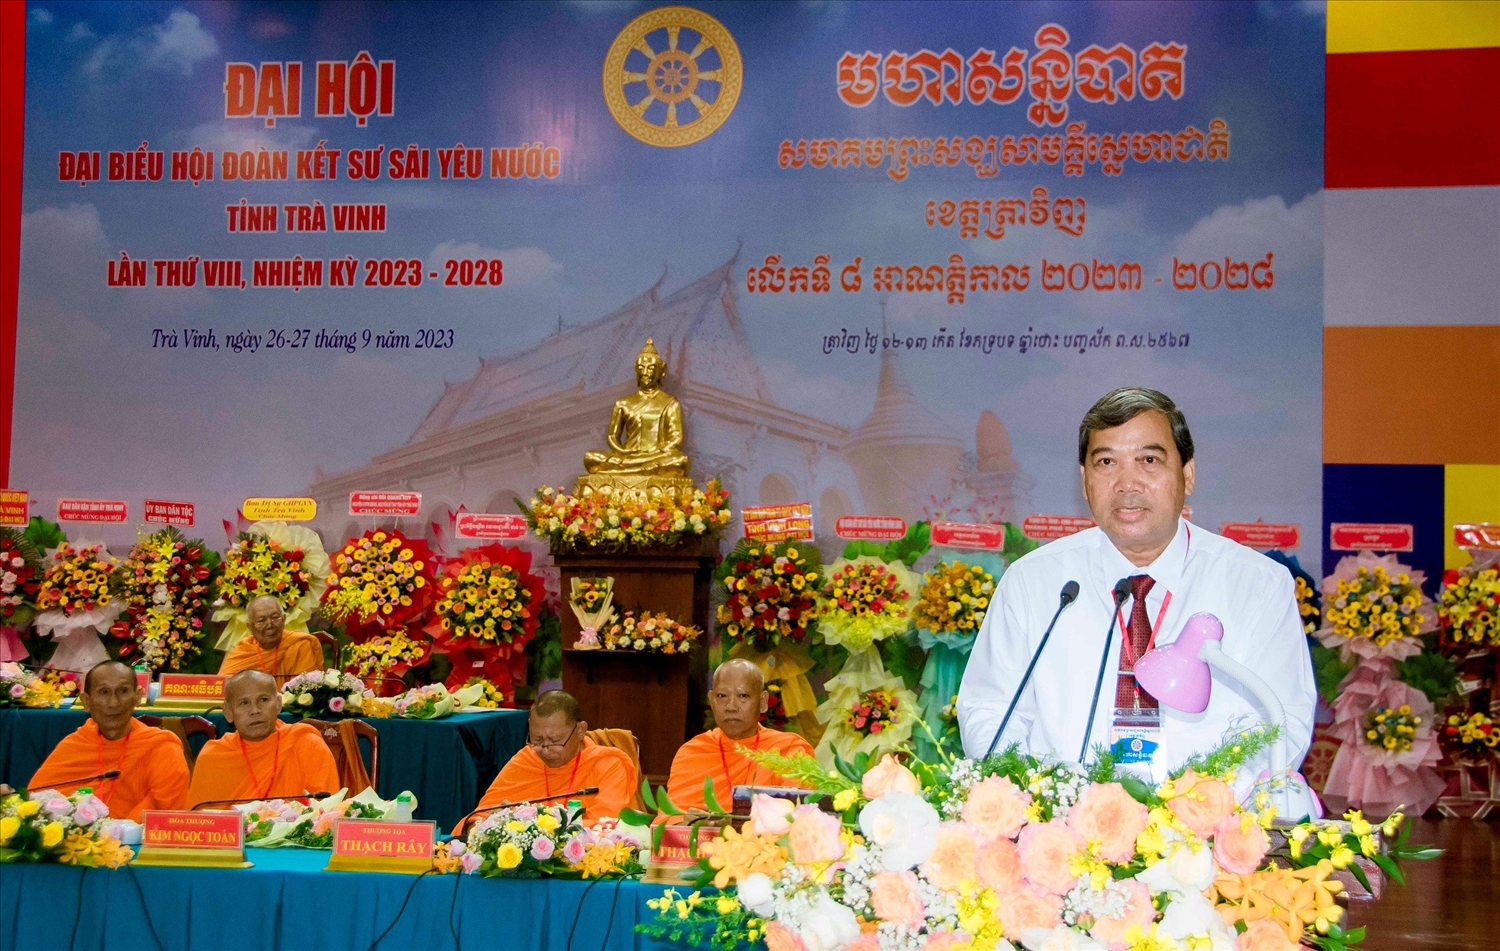  Ông Kim Ngọc Thái - Phó Bí thư Thường trực Tỉnh ủy, Chủ tịch HĐND tỉnh Trà Vinh phát biểu chúc mừng Đại hội